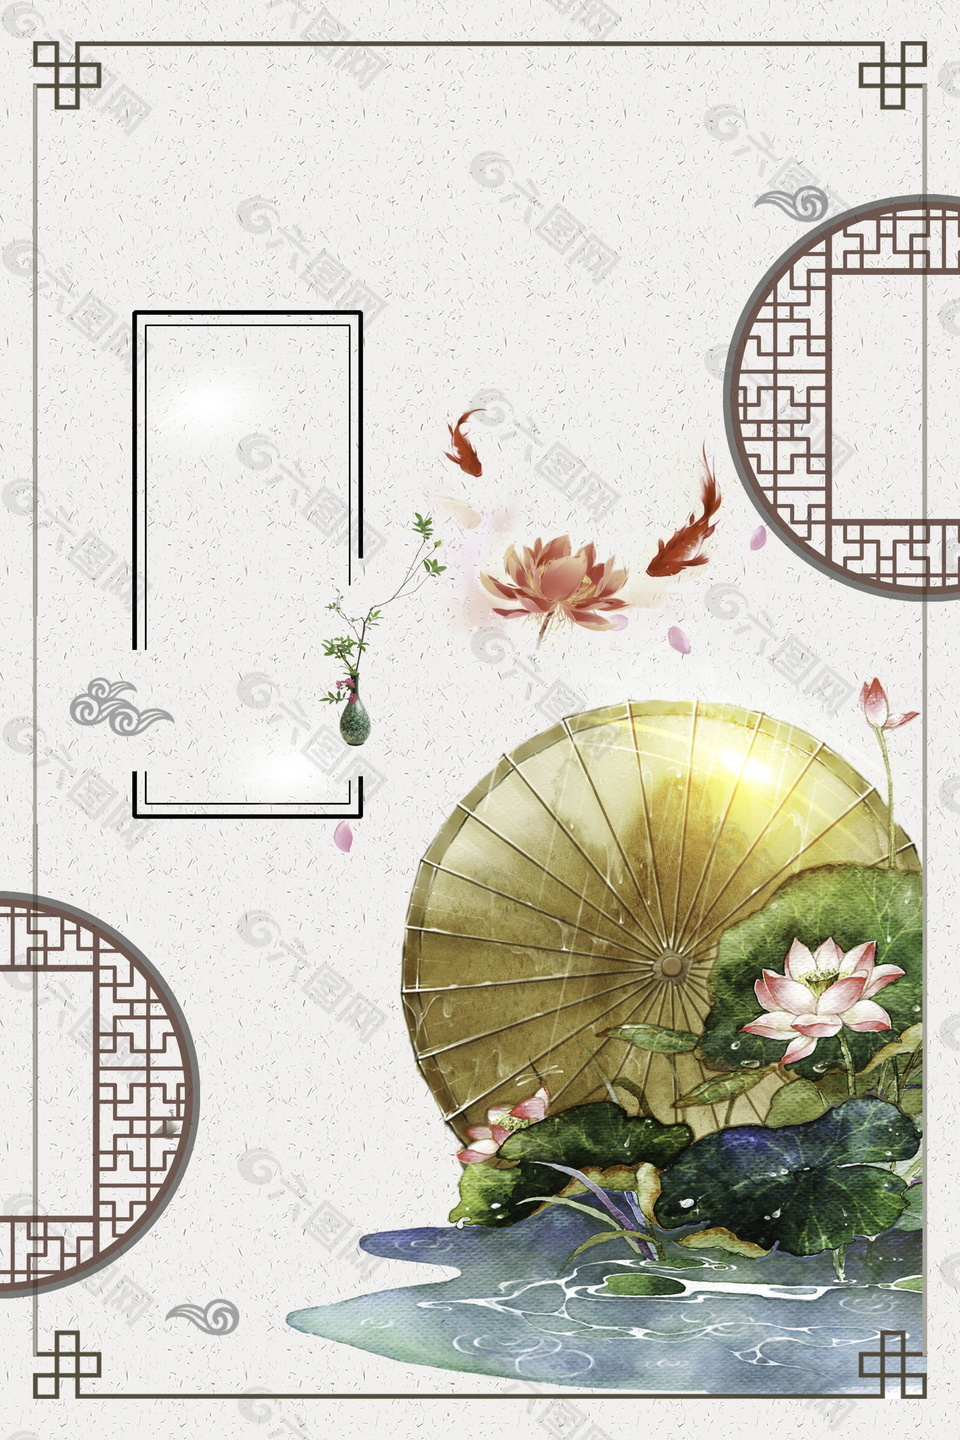 中国风彩绘荷花边框背景素材